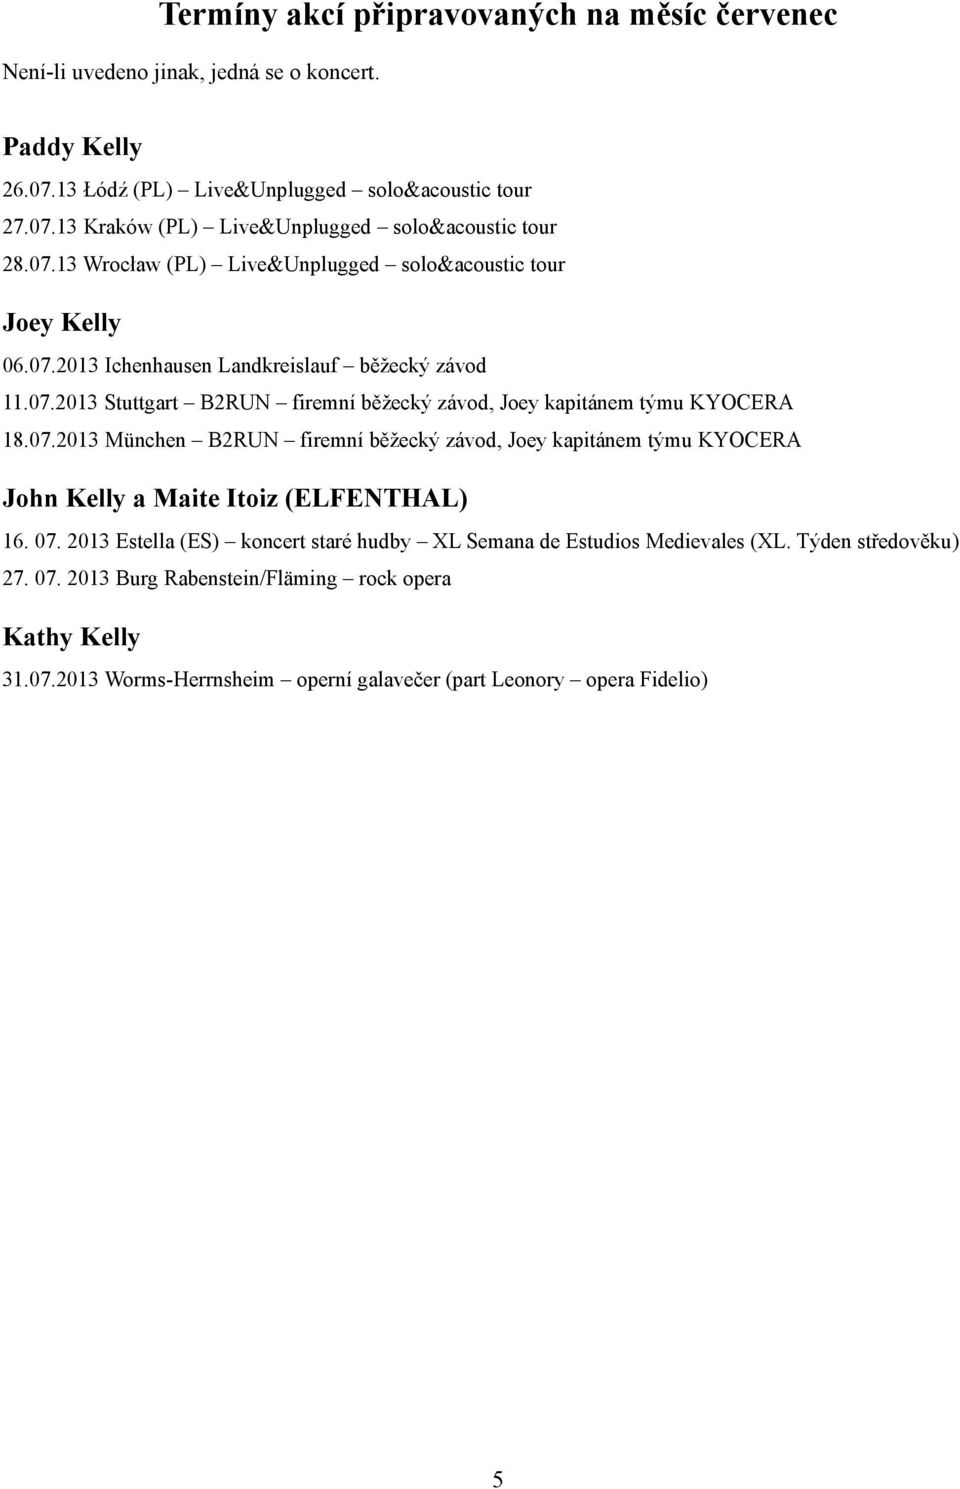 07.2013 München B2RUN firemní běžecký závod, Joey kapitánem týmu KYOCERA John Kelly a Maite Itoiz (ELFENTHAL) 16. 07.